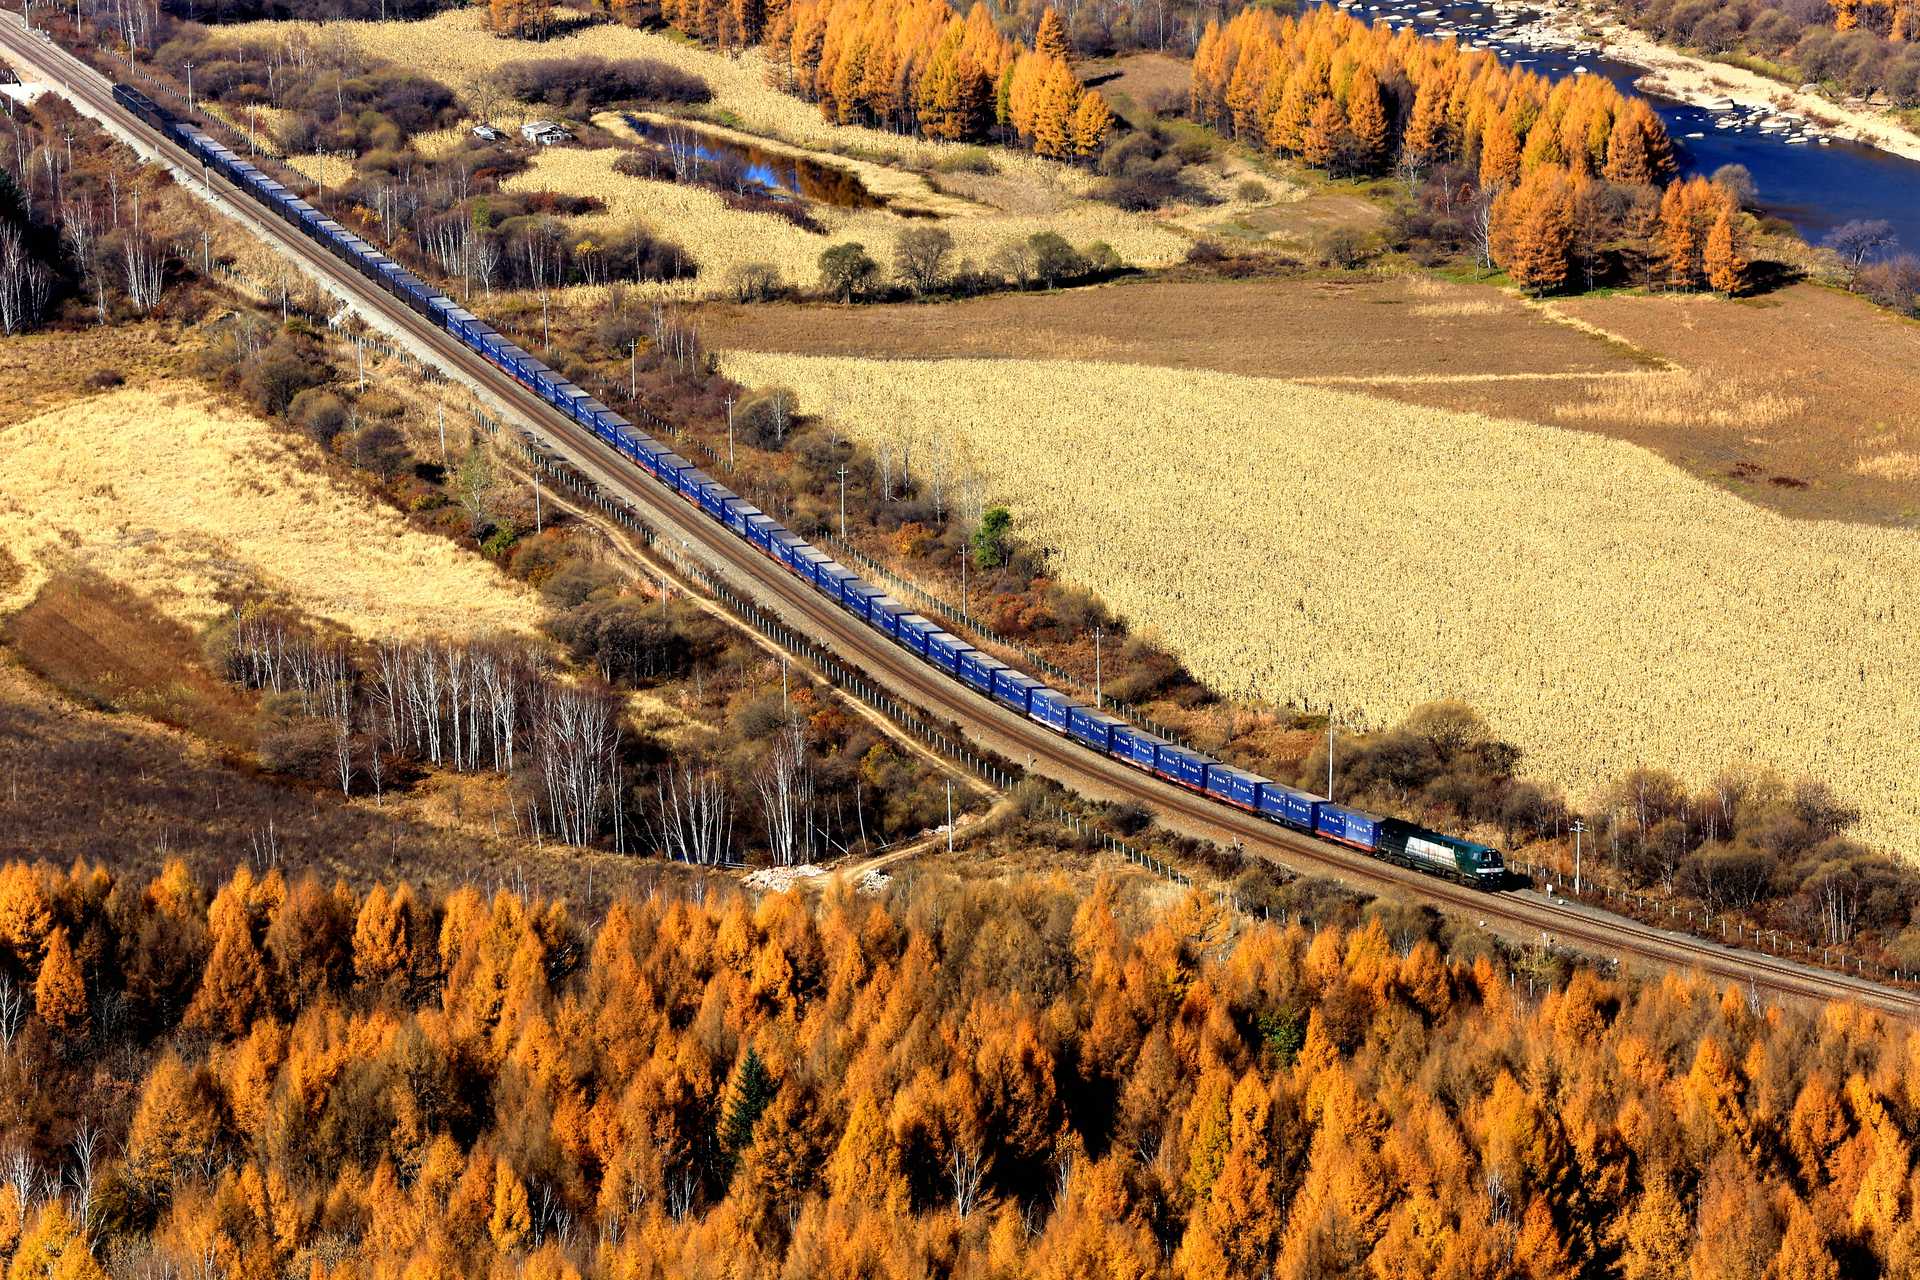 《穿越金色秋天的列车》王波、15636093310、金色秋天里，一列火车穿越在秋天里，给这里带来了生机可谓难得一见的大自然和人文景观结合的壮观场面，2018年10月13日拍摄于伊春南岔区仙翁山。.jpg